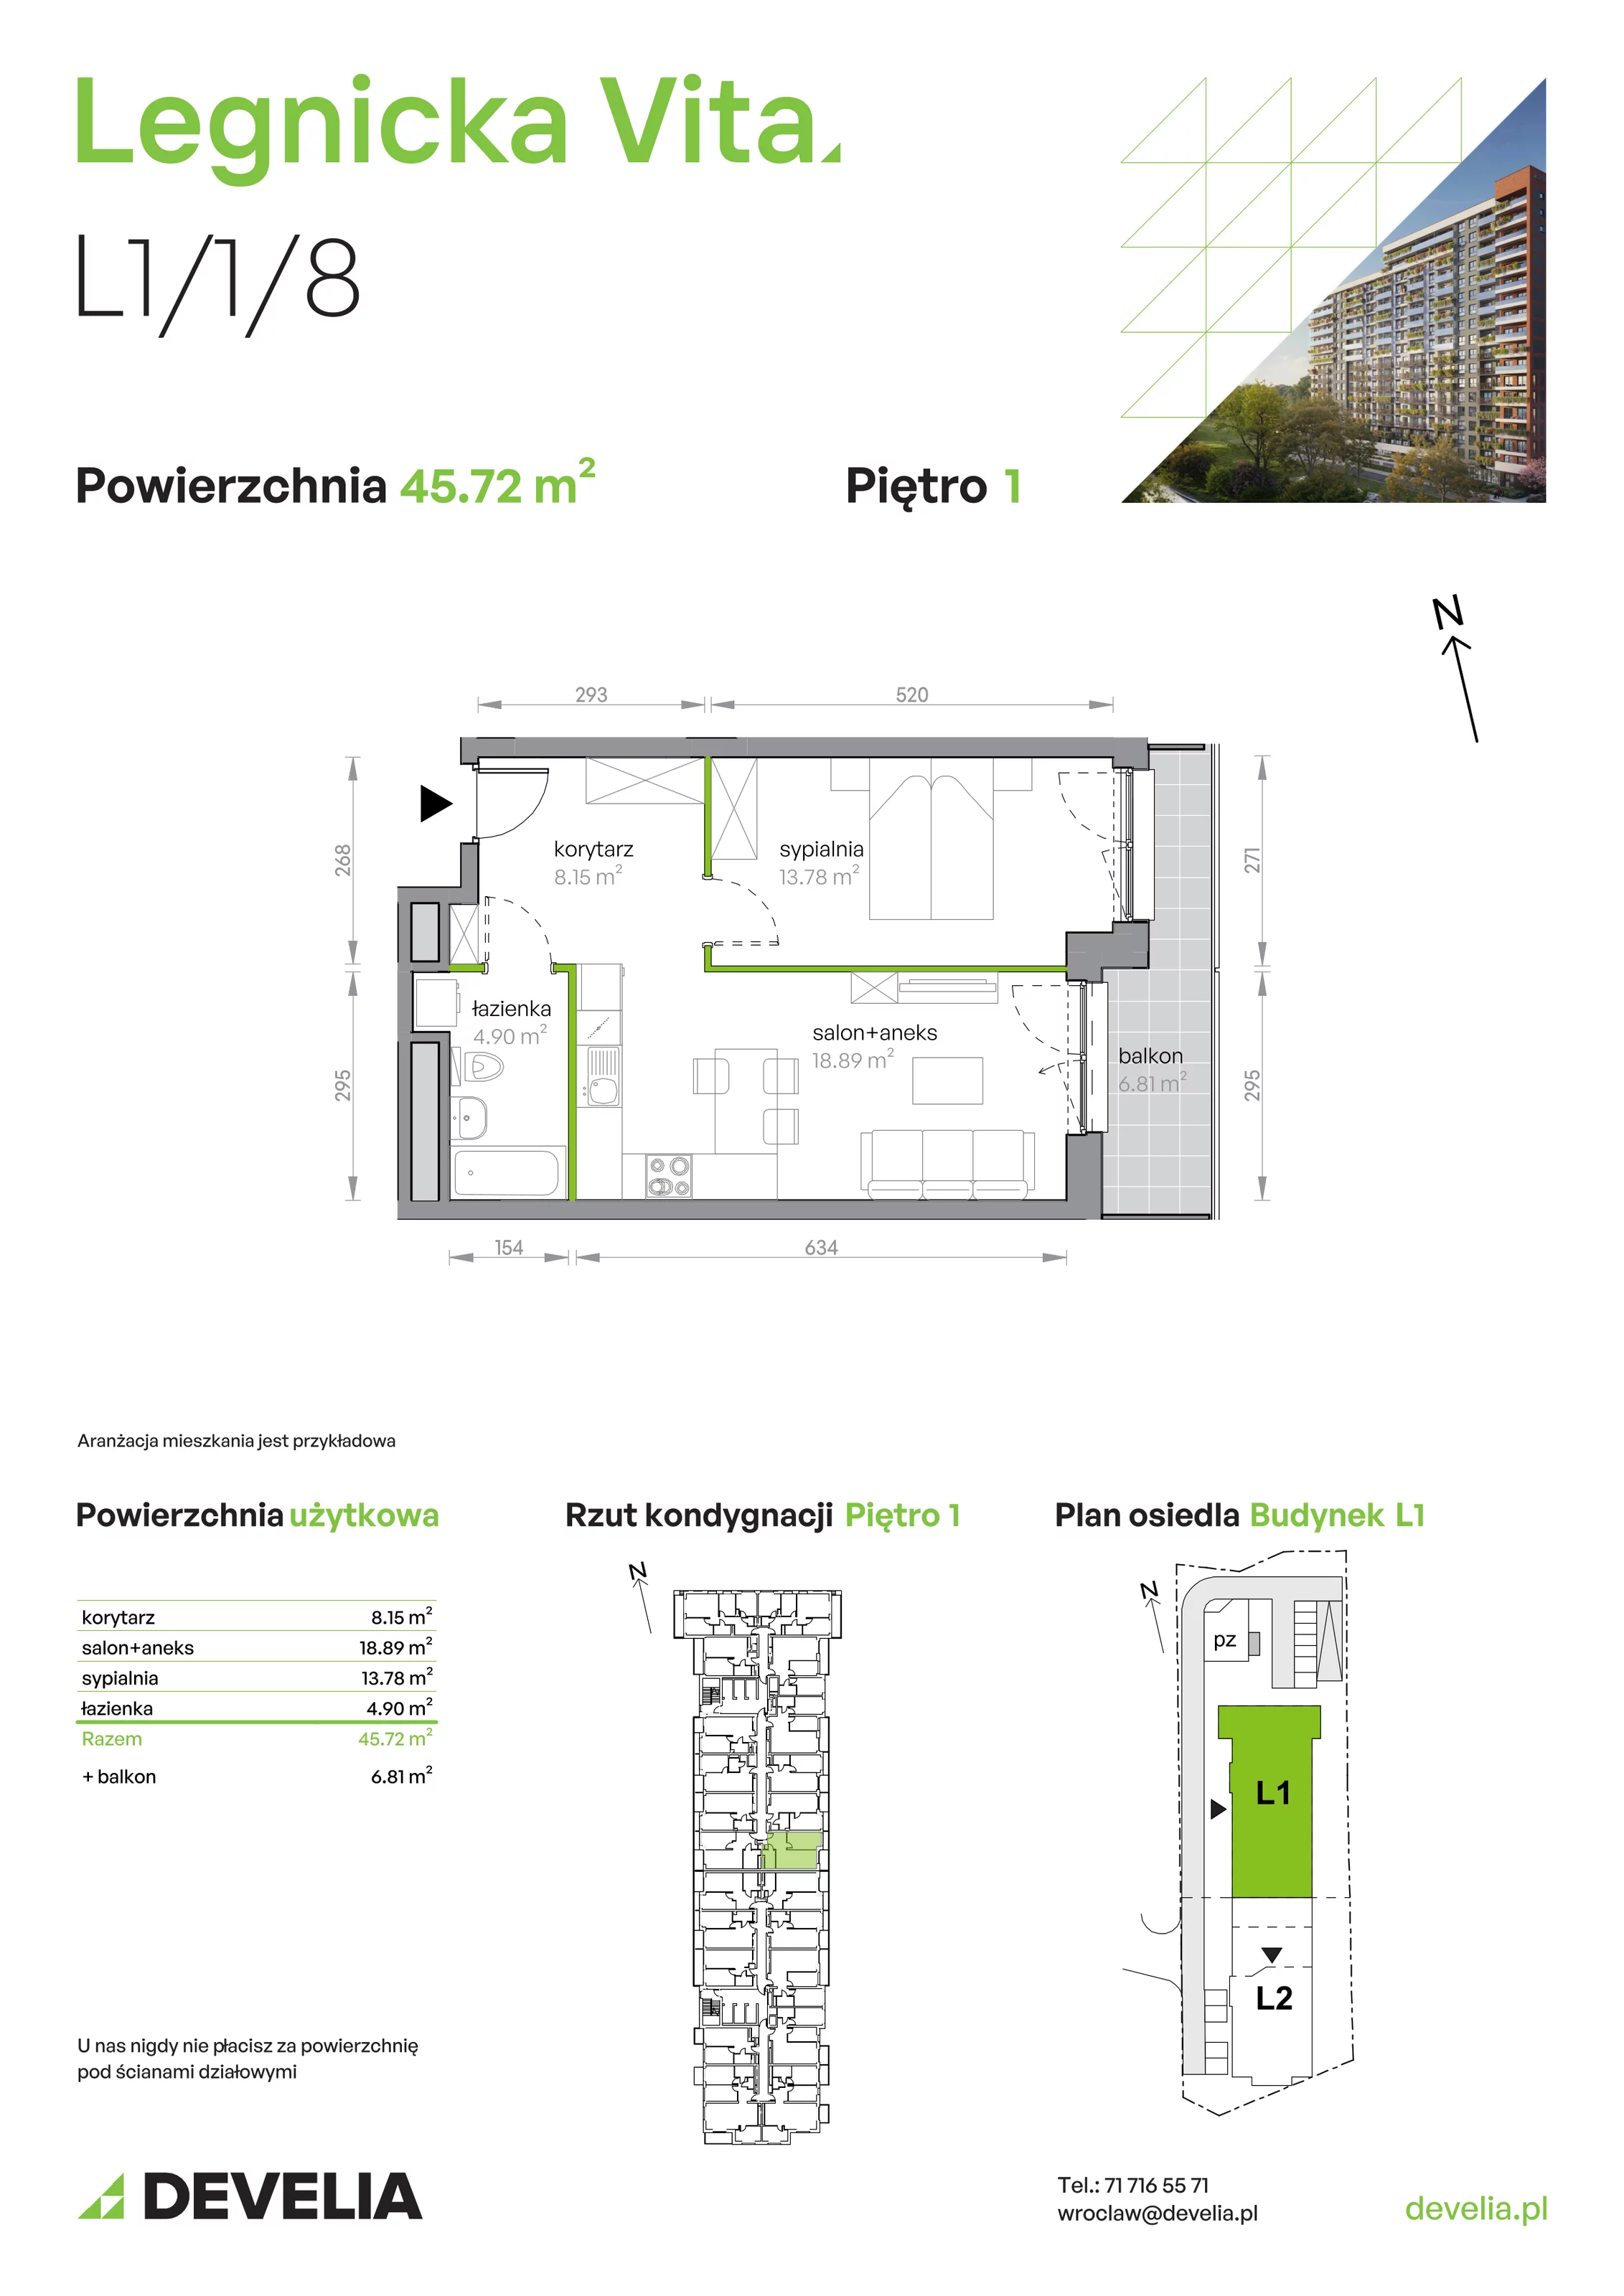 Mieszkanie 45,72 m², piętro 1, oferta nr L1/1/8, Legnicka Vita, Wrocław, Gądów-Popowice Południowe, Popowice, ul. Legnicka 52 A